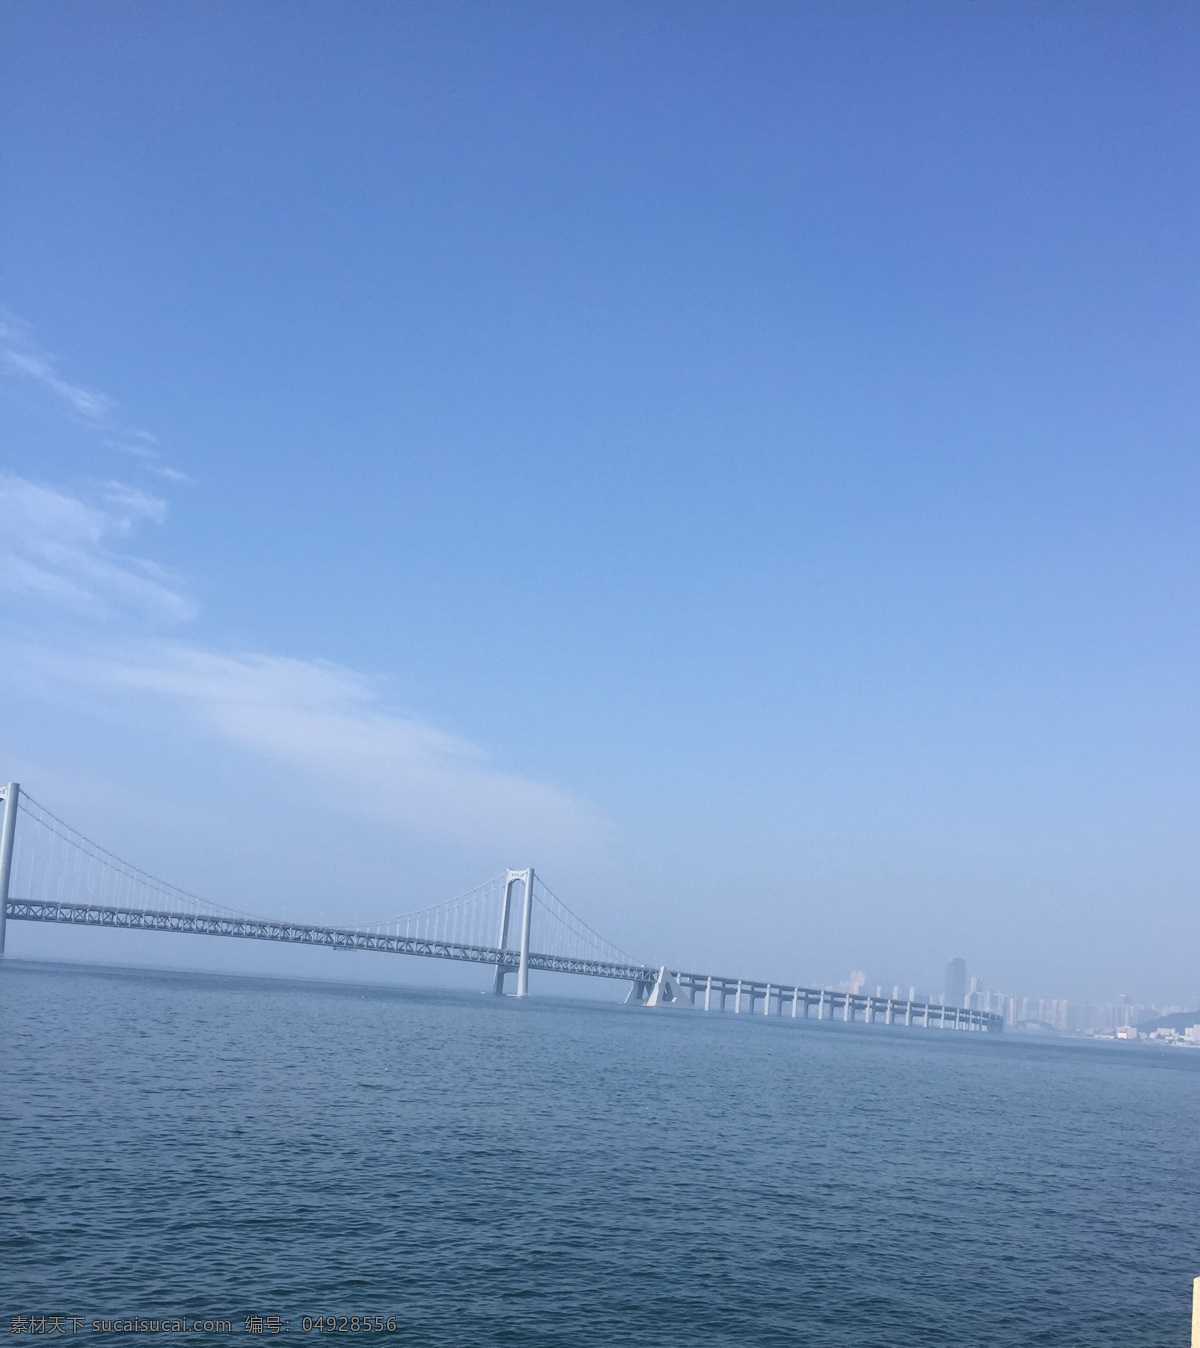 大连 星海湾 大桥 大连星海湾 滨海大桥 海水 蓝天 天空 建筑 大连风光 风景图 自然景观 自然风景